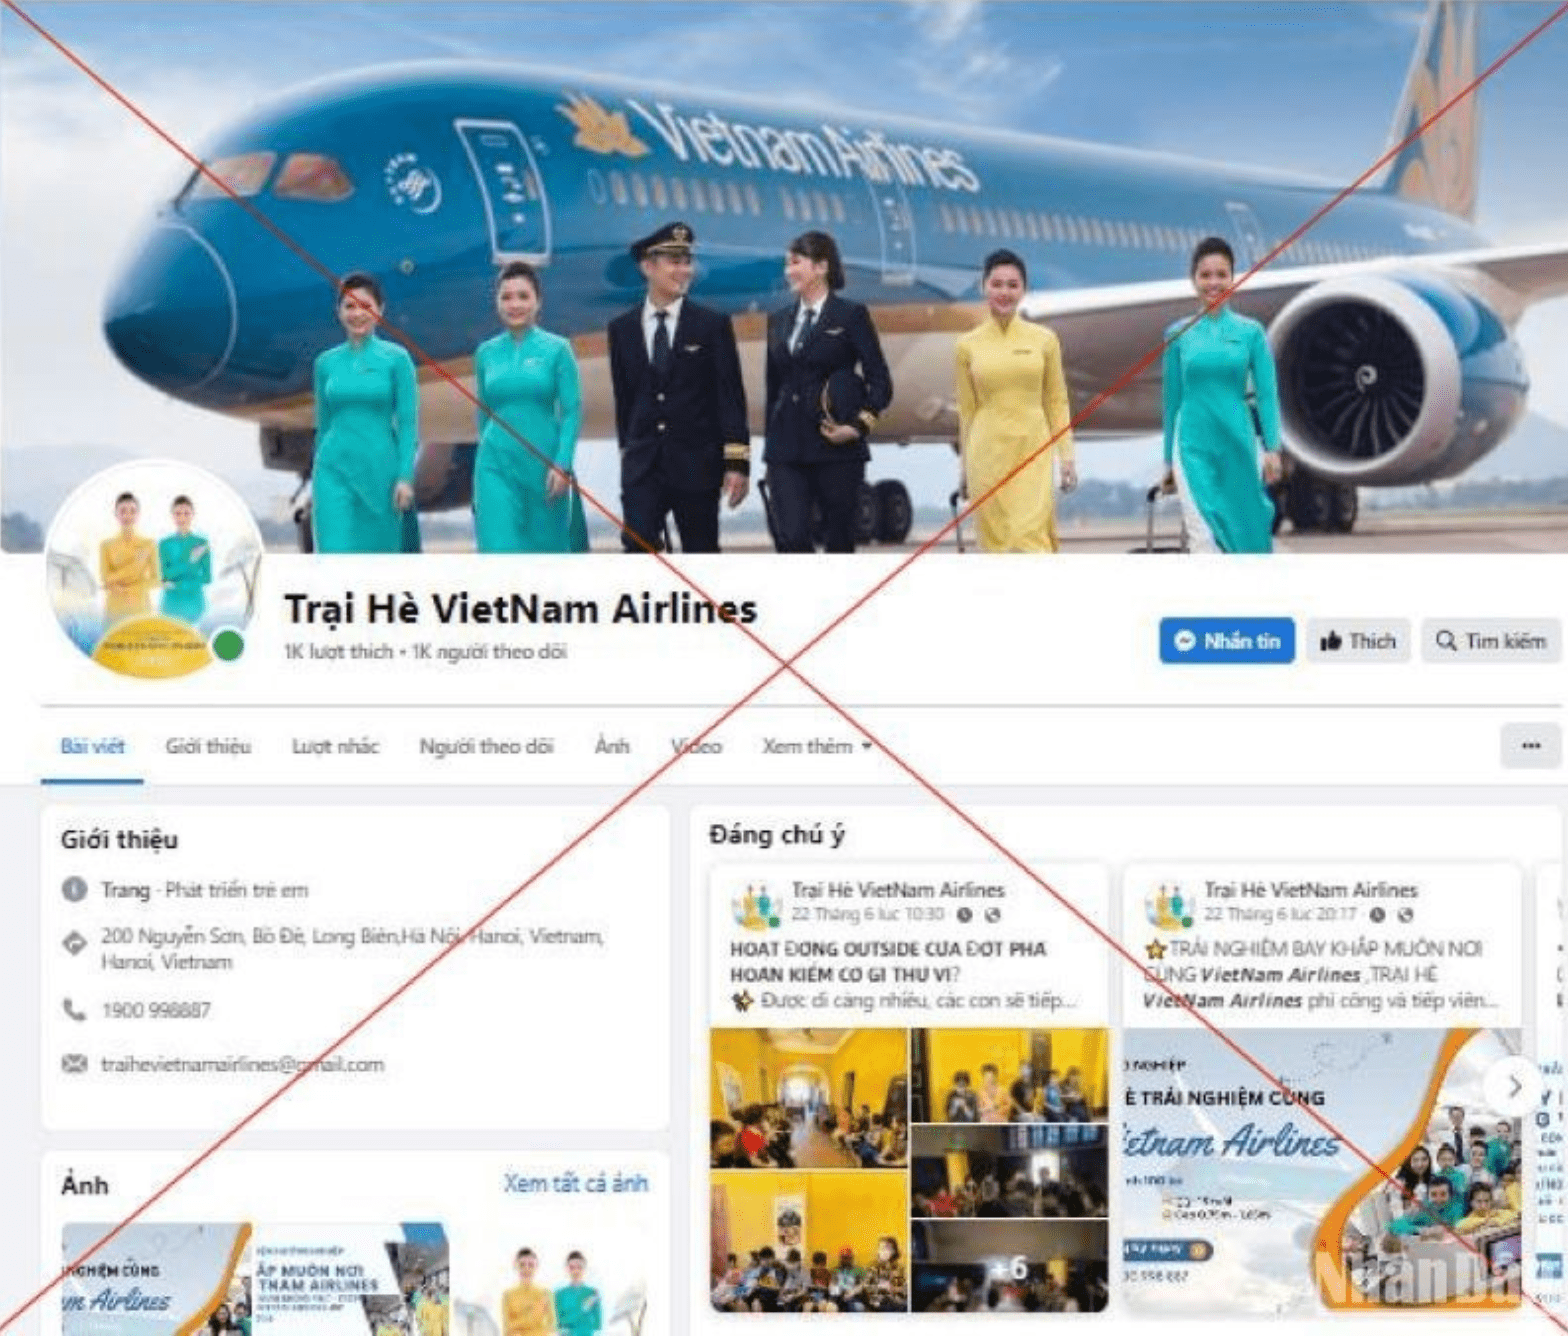 Vietnam Airlines khuyến nghị cảnh giác trại hè hướng nghiệp hàng không giả mạo